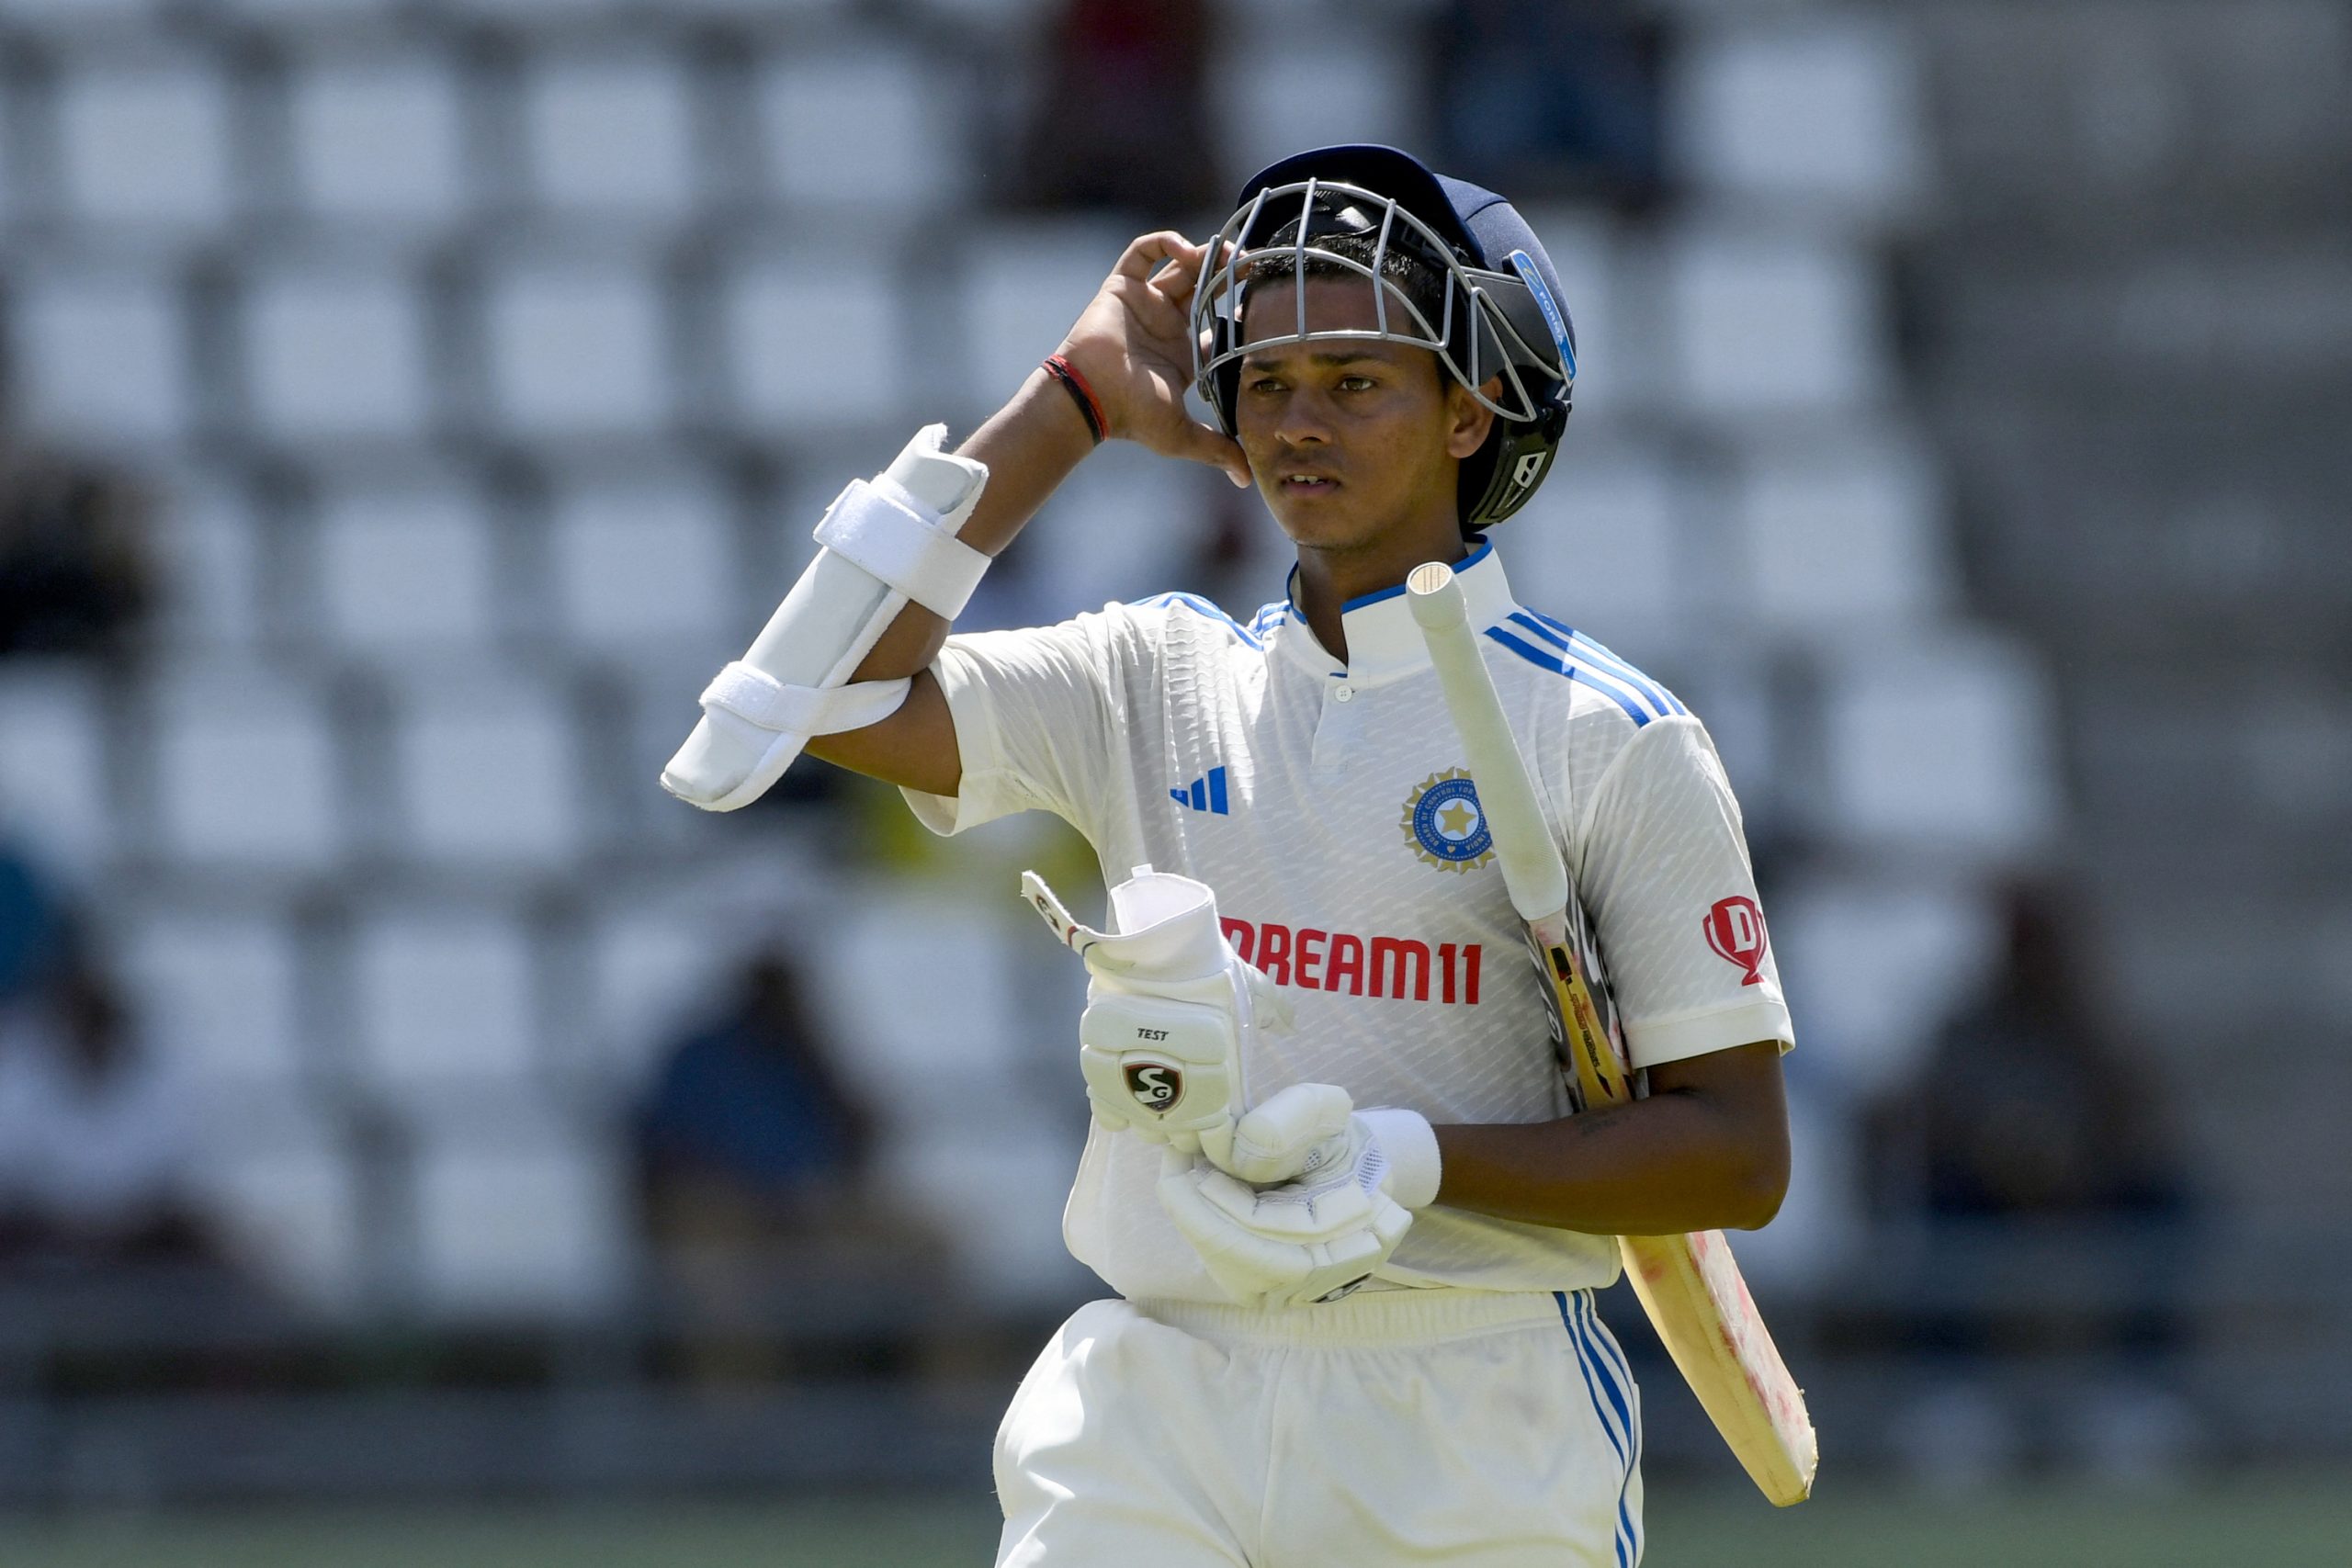 5 Highest Scores By Indian Batsmen On Test Debut